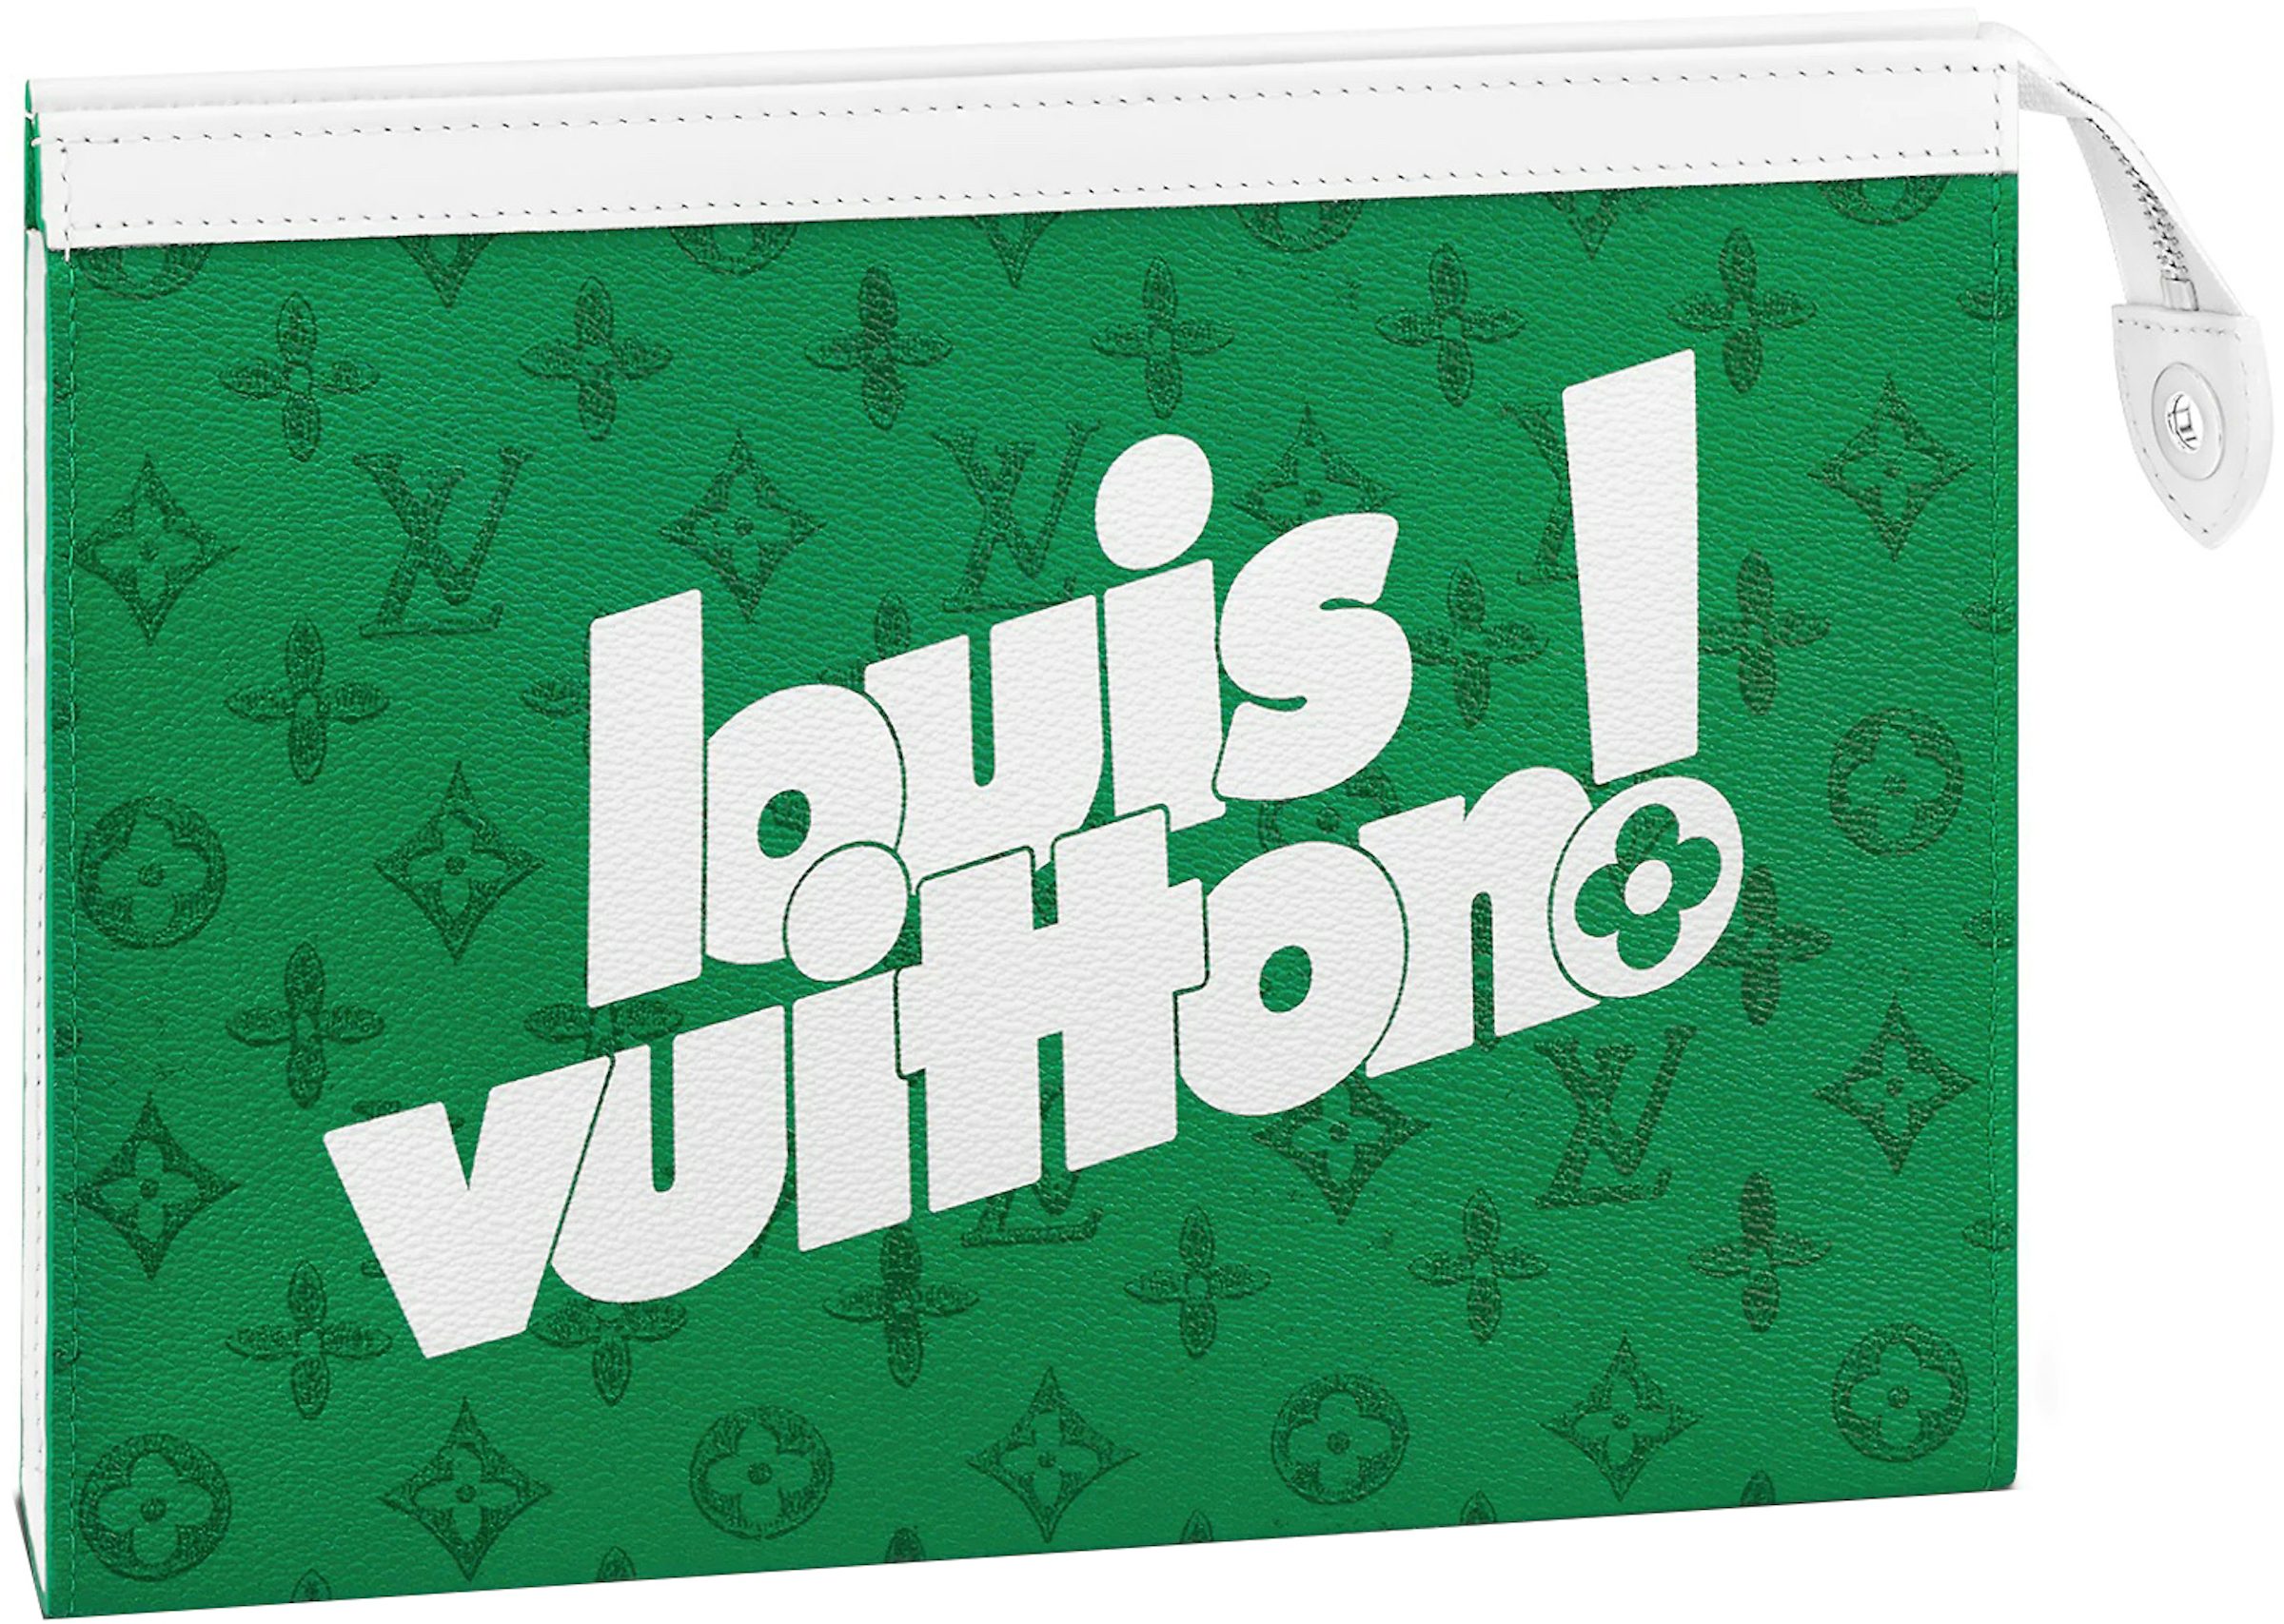 Buy Louis Vuitton Accessories - Highest Bid - StockX